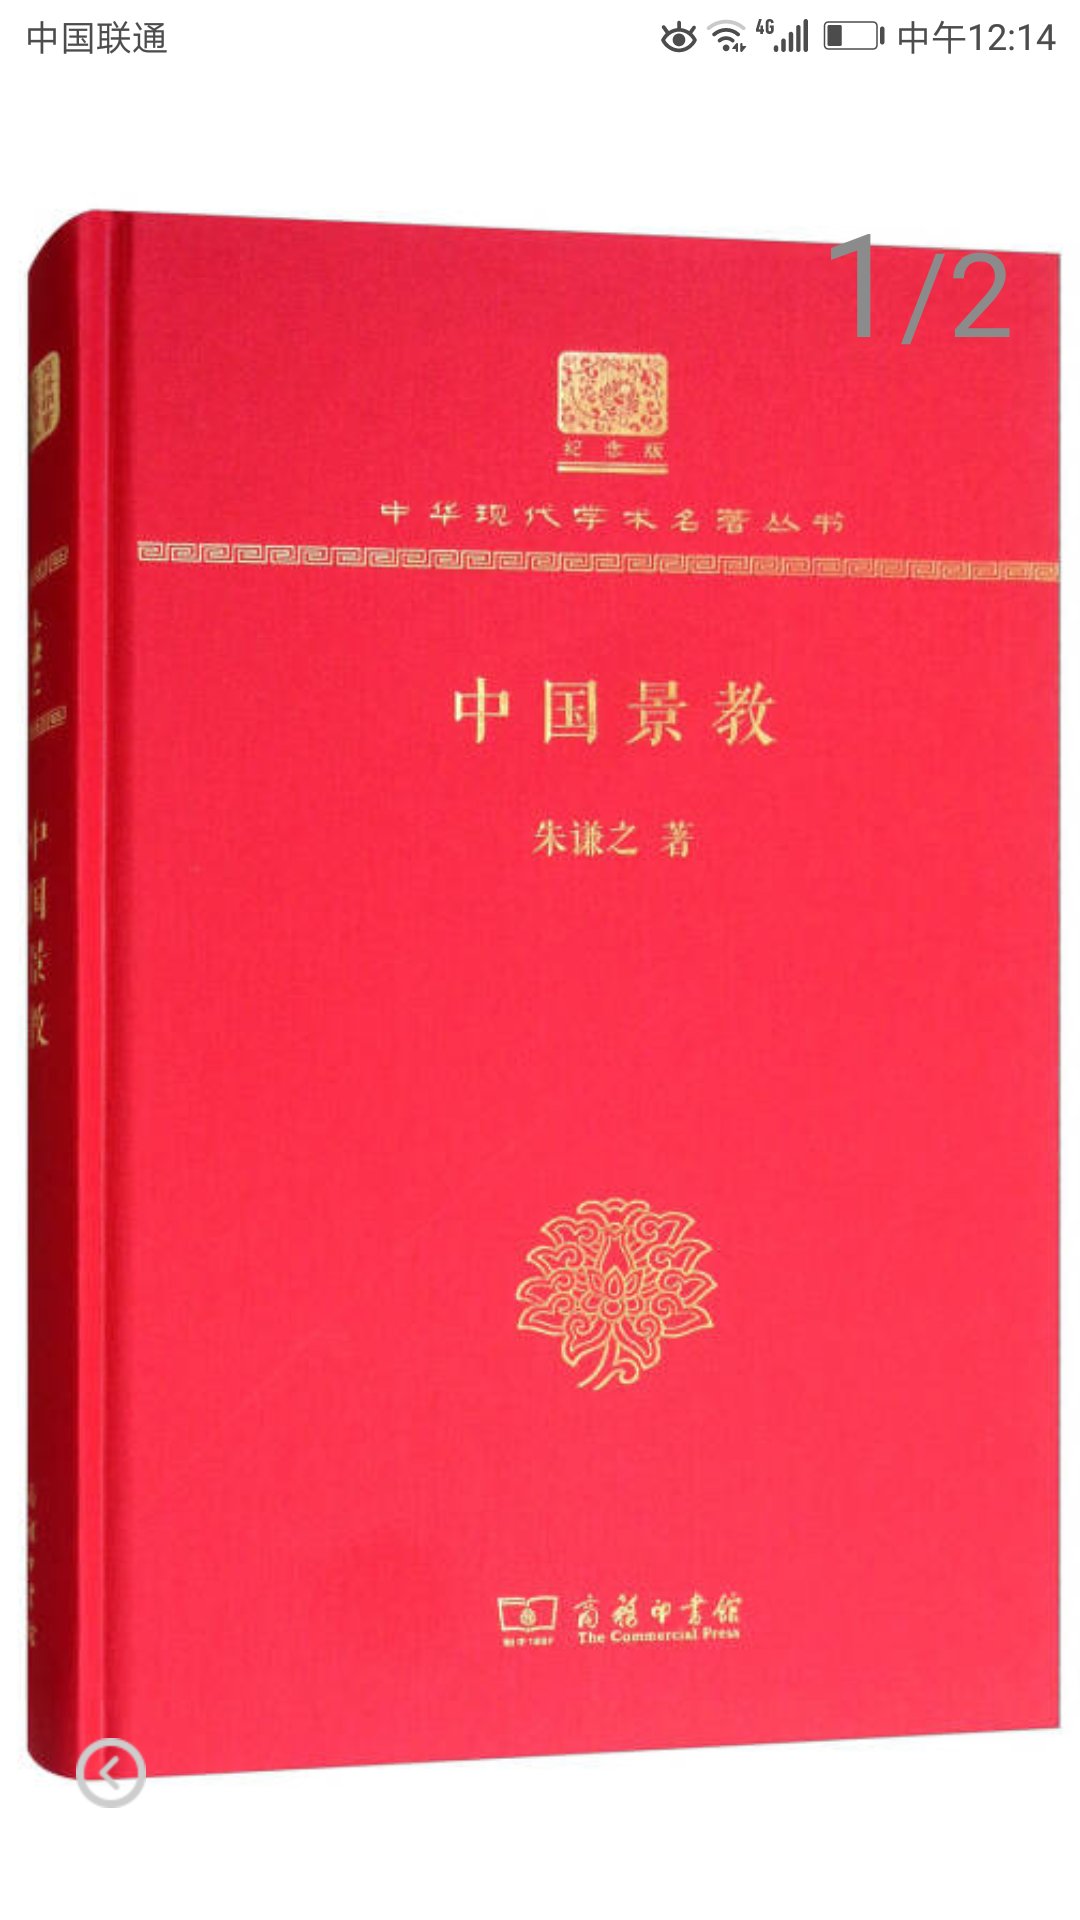 商务印刷馆推出的中华现代学术名著丛书，精装大16开，书脊锁线纸质优良，排版印刷得体大方，活动期间价格实惠，送货速度快，非常满意。